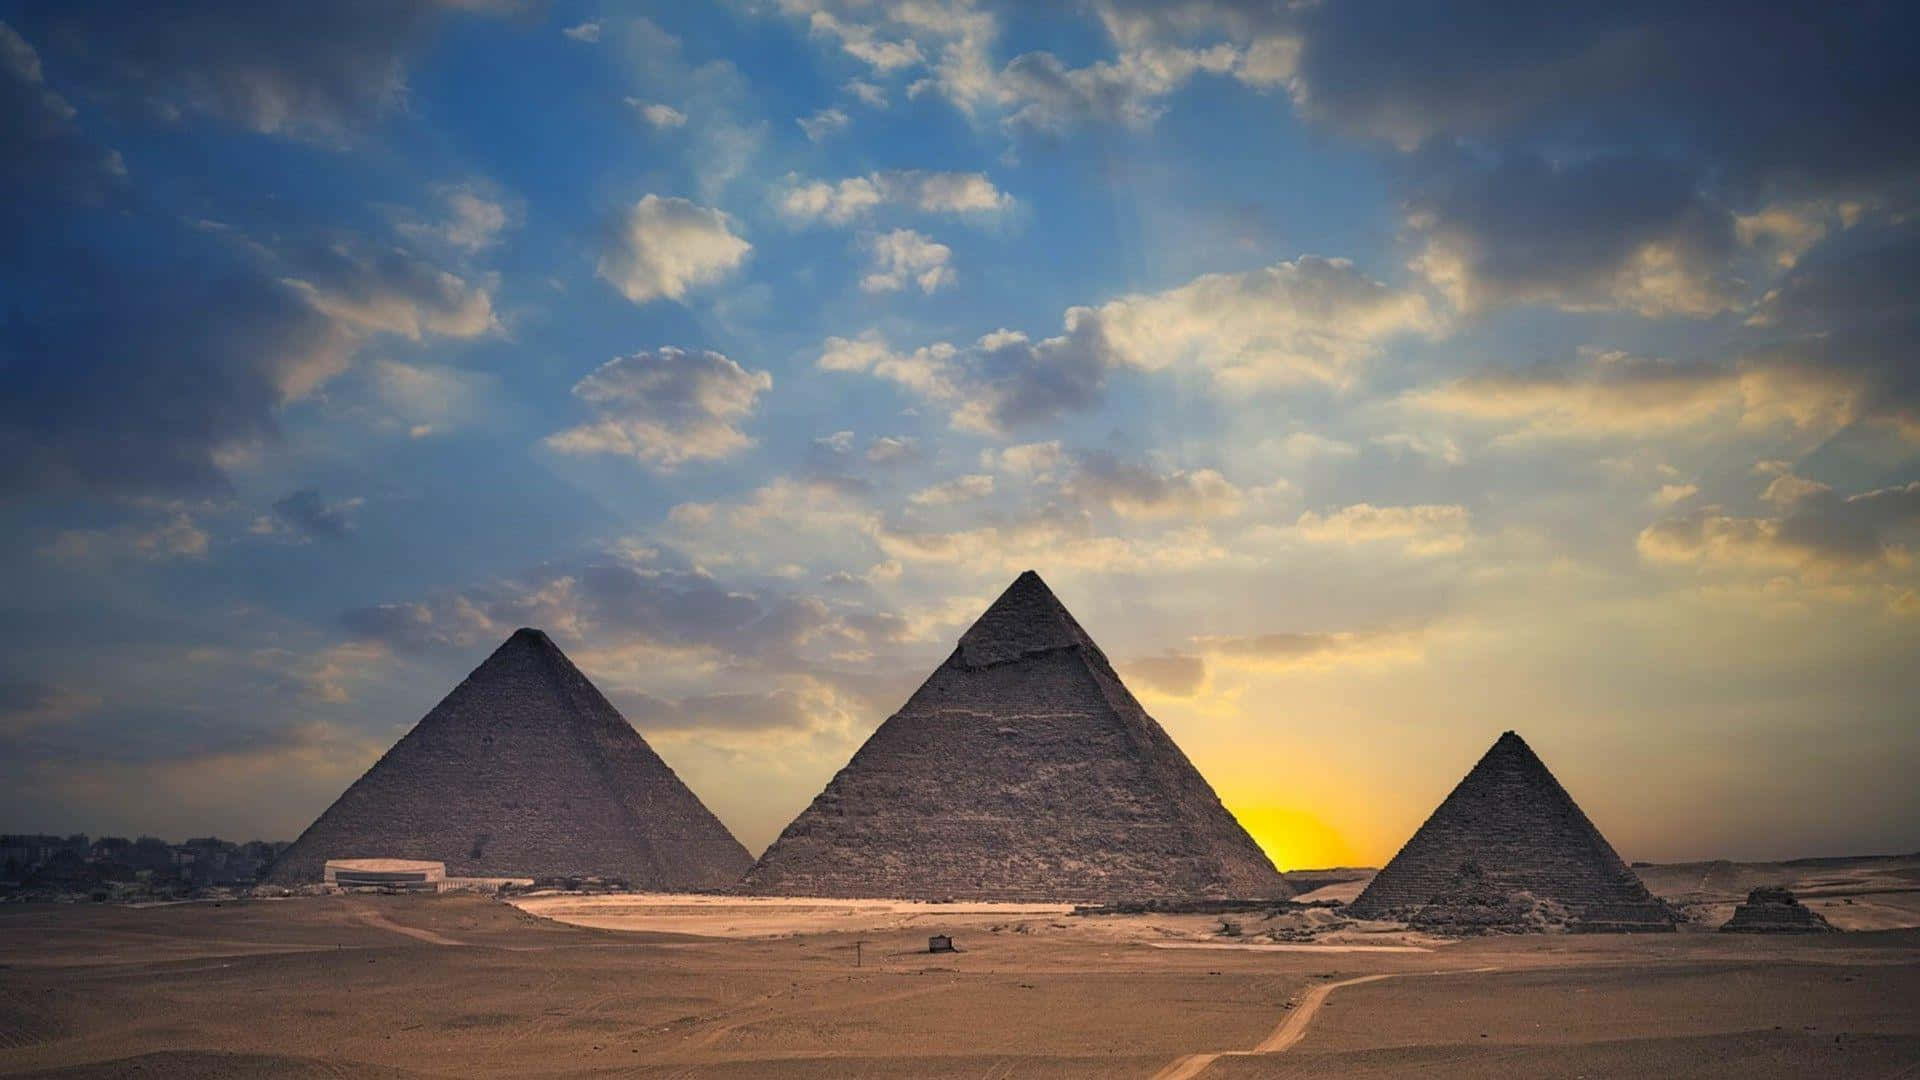 Lepiramidi In Egitto Con La Necropoli Di Giza Sullo Sfondo.